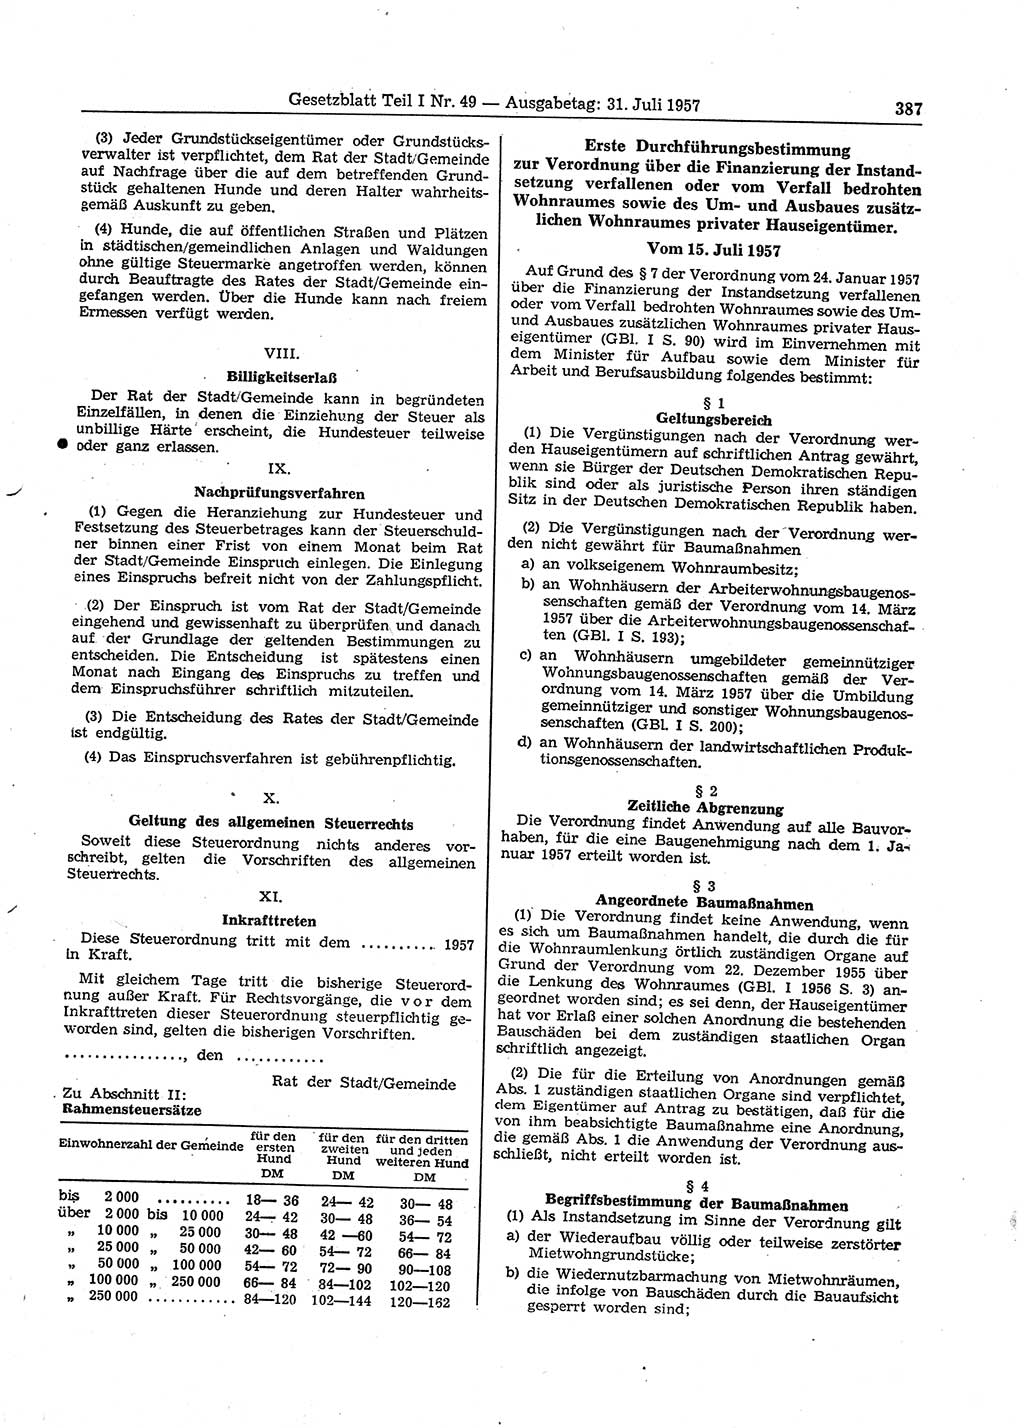 Gesetzblatt (GBl.) der Deutschen Demokratischen Republik (DDR) Teil Ⅰ 1957, Seite 387 (GBl. DDR Ⅰ 1957, S. 387)